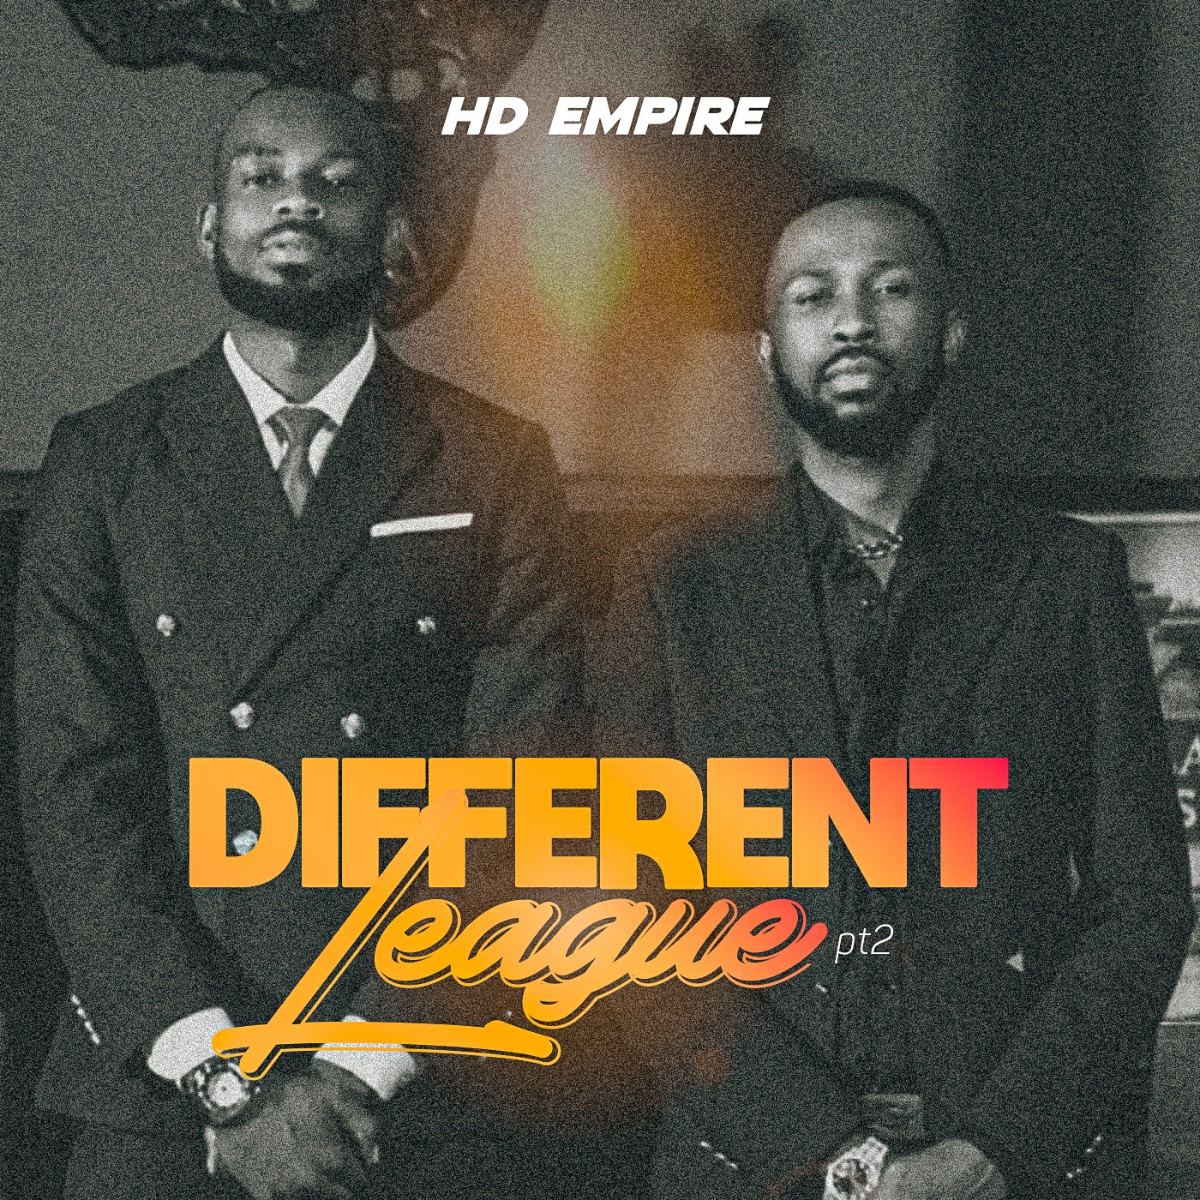 HD Empire - Different League (Part 2)